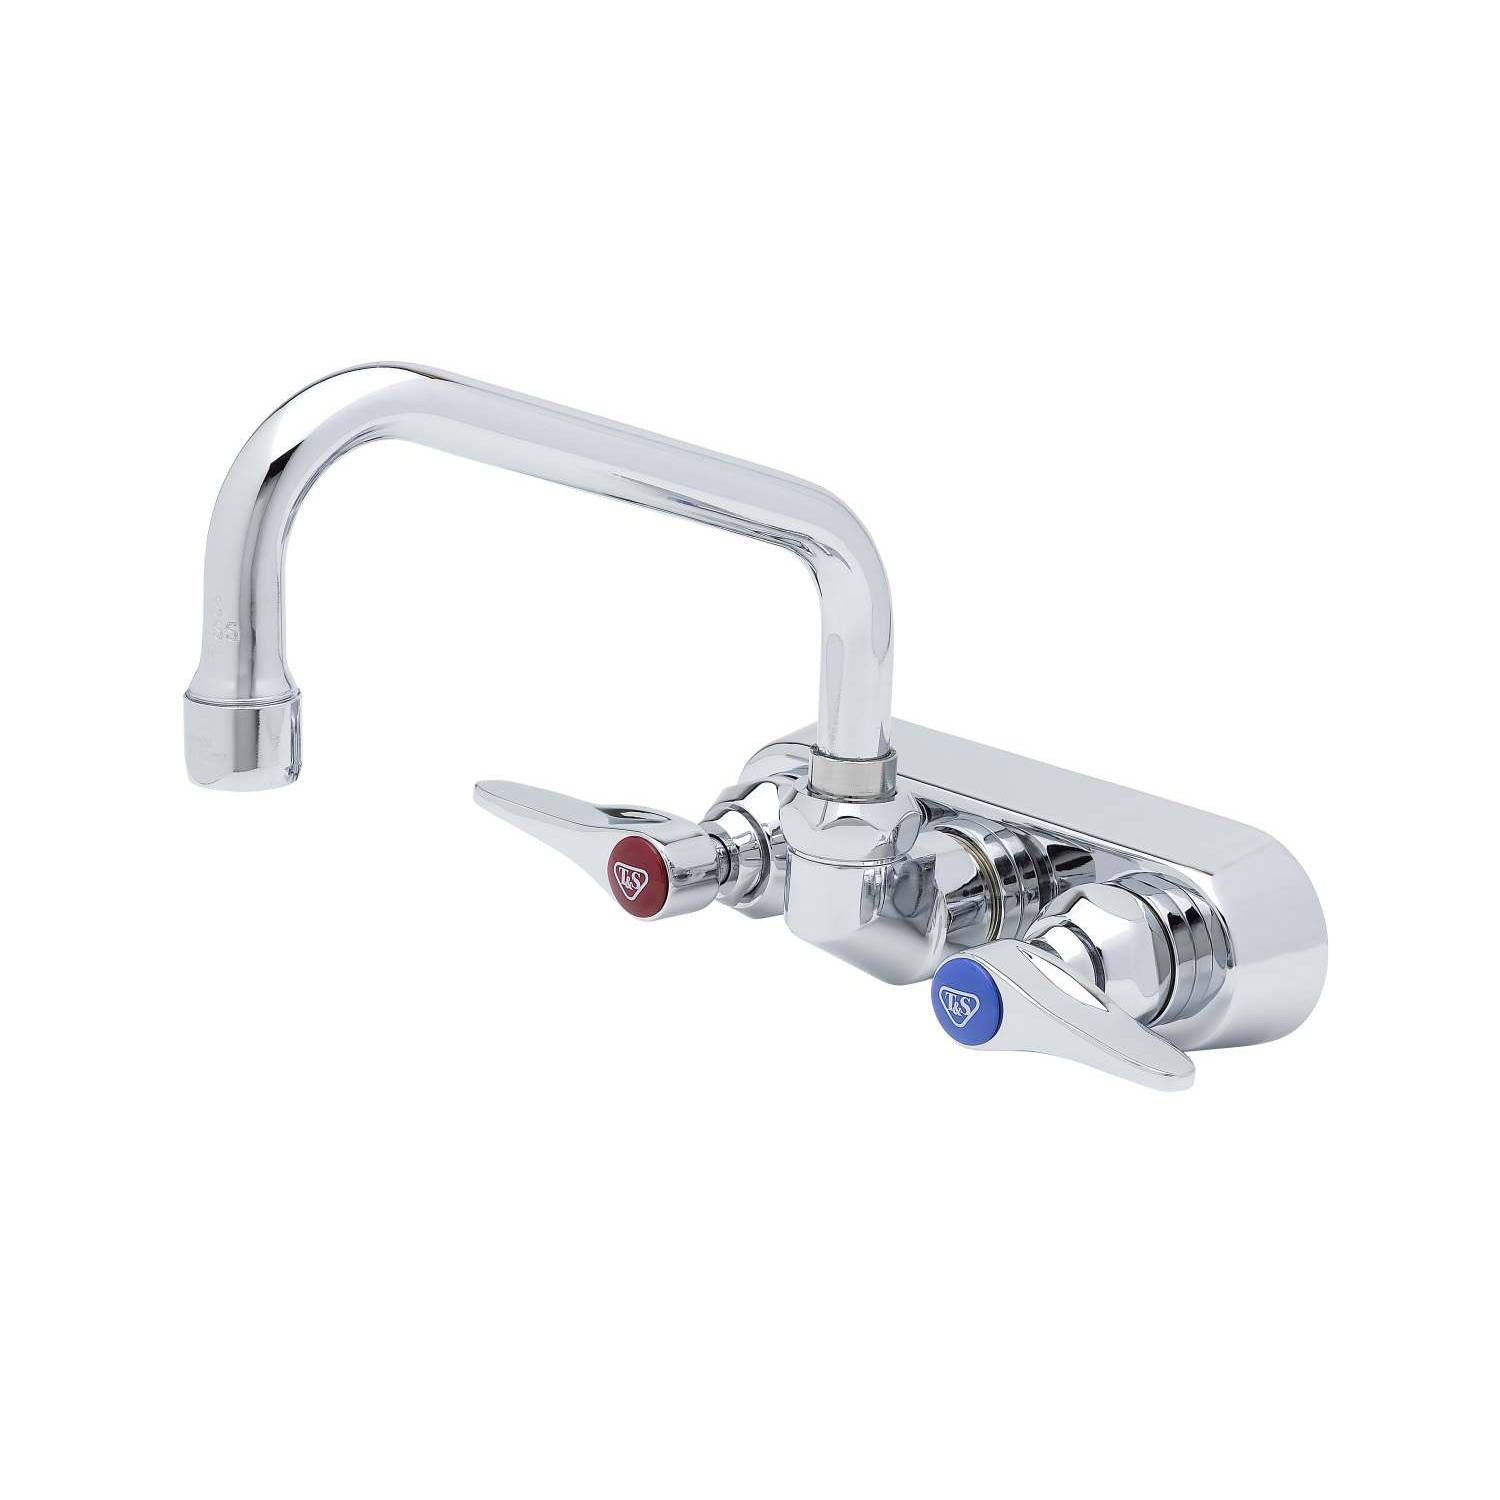 Workboard & Bar Sink Faucets: B-1116 - T&S Brass